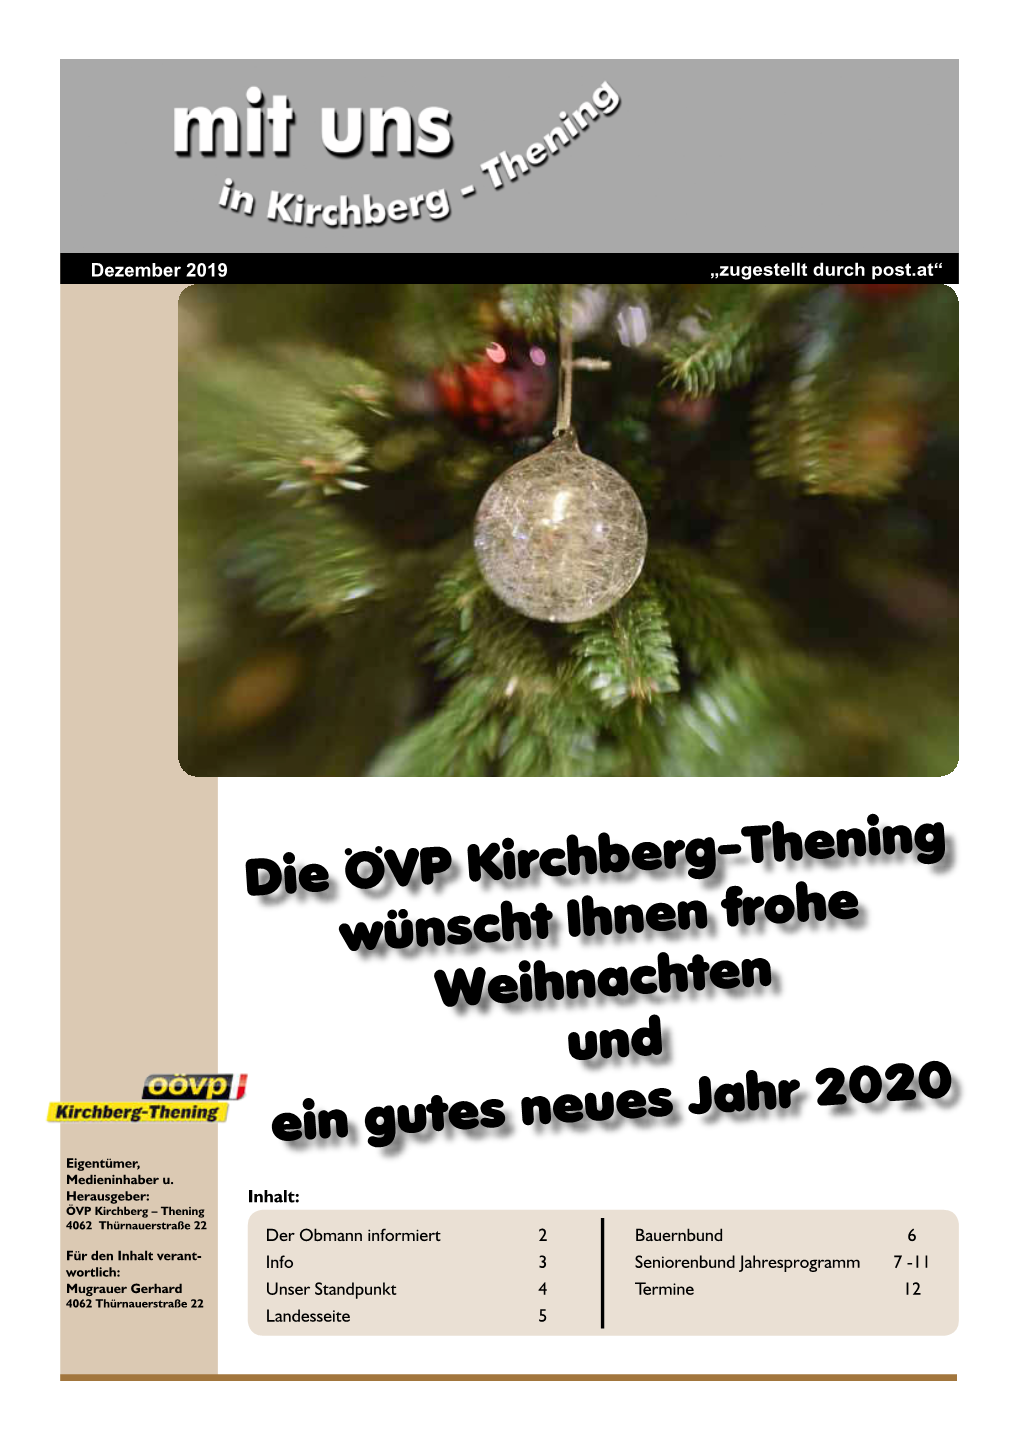 Die ÖVP Kirchberg-Thening Wünscht Ihnen Frohe Weihnachten Und Ein Gutes Neues Jahr 2020 Eigentümer, Medieninhaber U